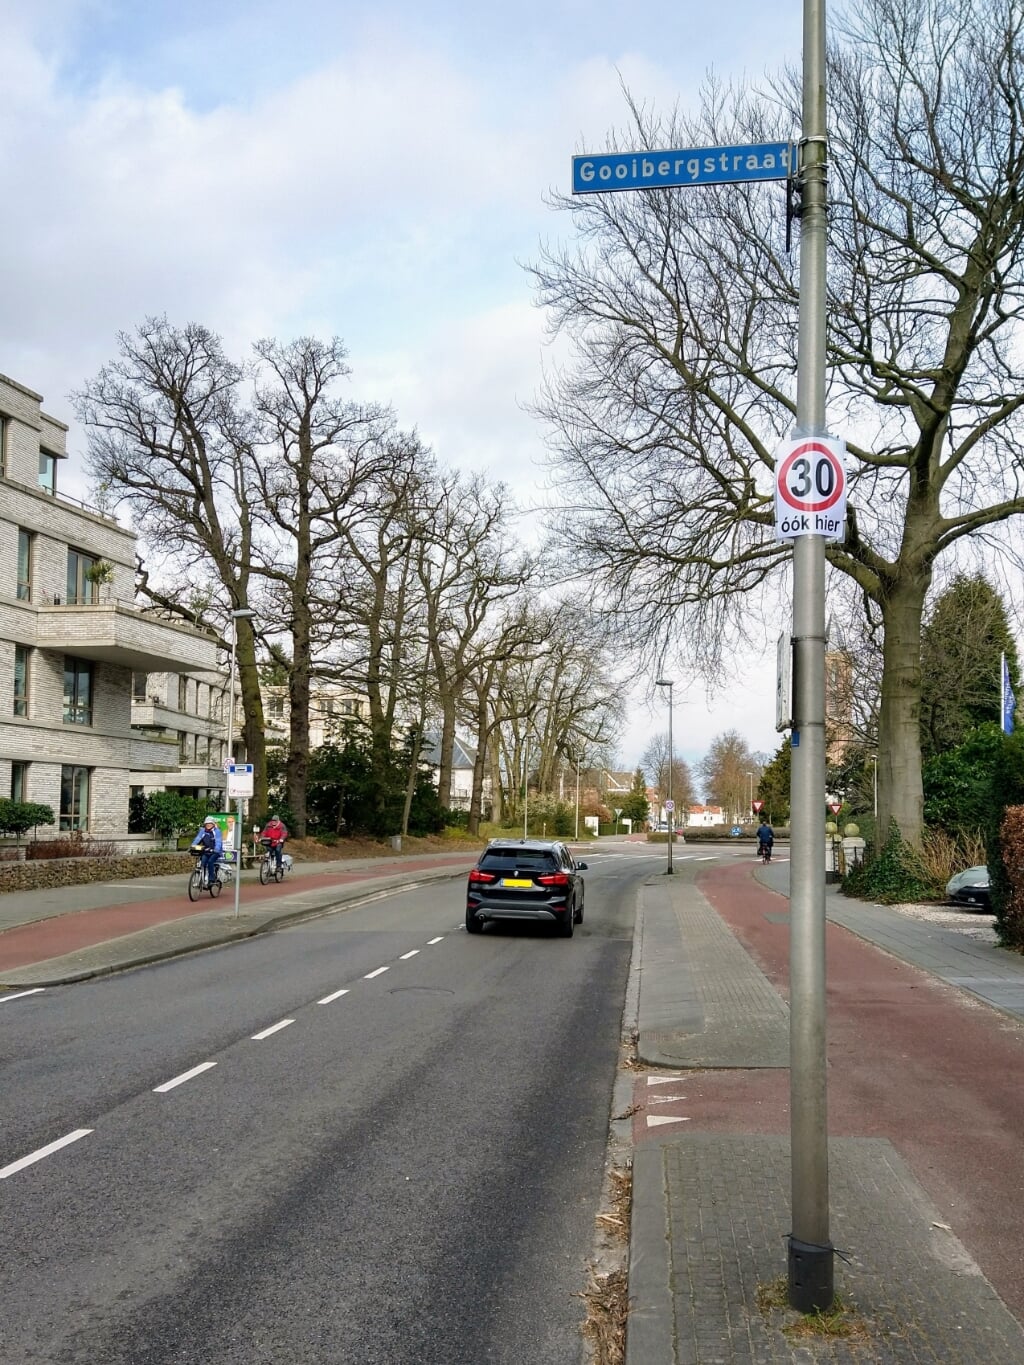 Het knooppunt Gooibergstraat-Brinklaan is een van de gevaarlijke oversteekplaatsen voor veel scholieren.